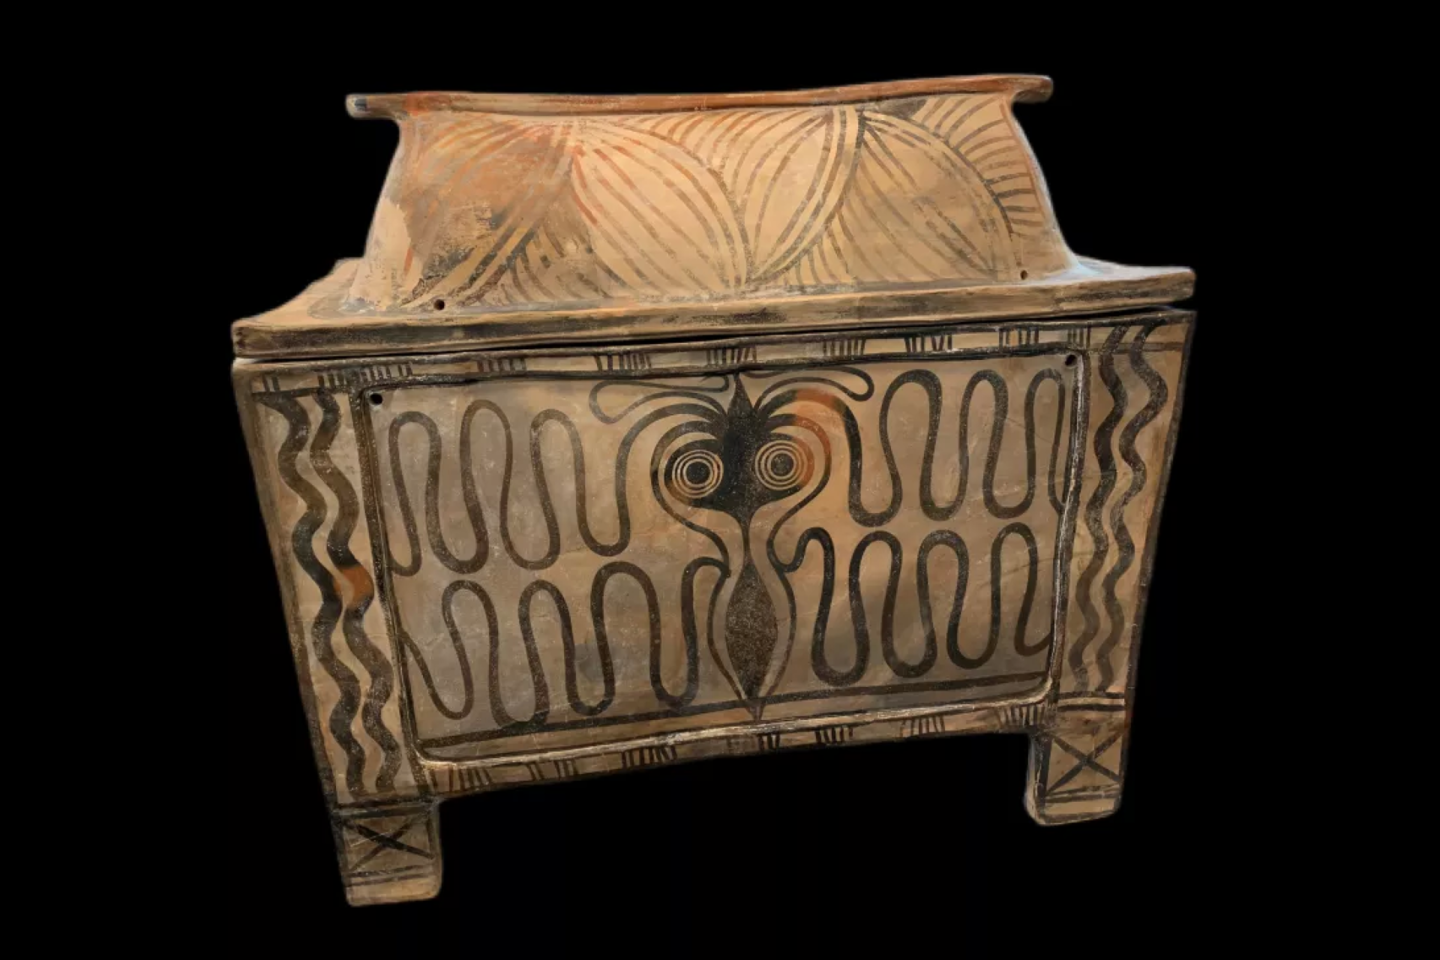  1 mln. dolerių vertės dekoratyvinė skrynia žmogaus palaikams, vadinama larnaksu, pagrobta iš Kretos bei datuojama 1400-1200 m. pr.m.e.<br> Niujorko apygardos prokurorų biuro nuotr.